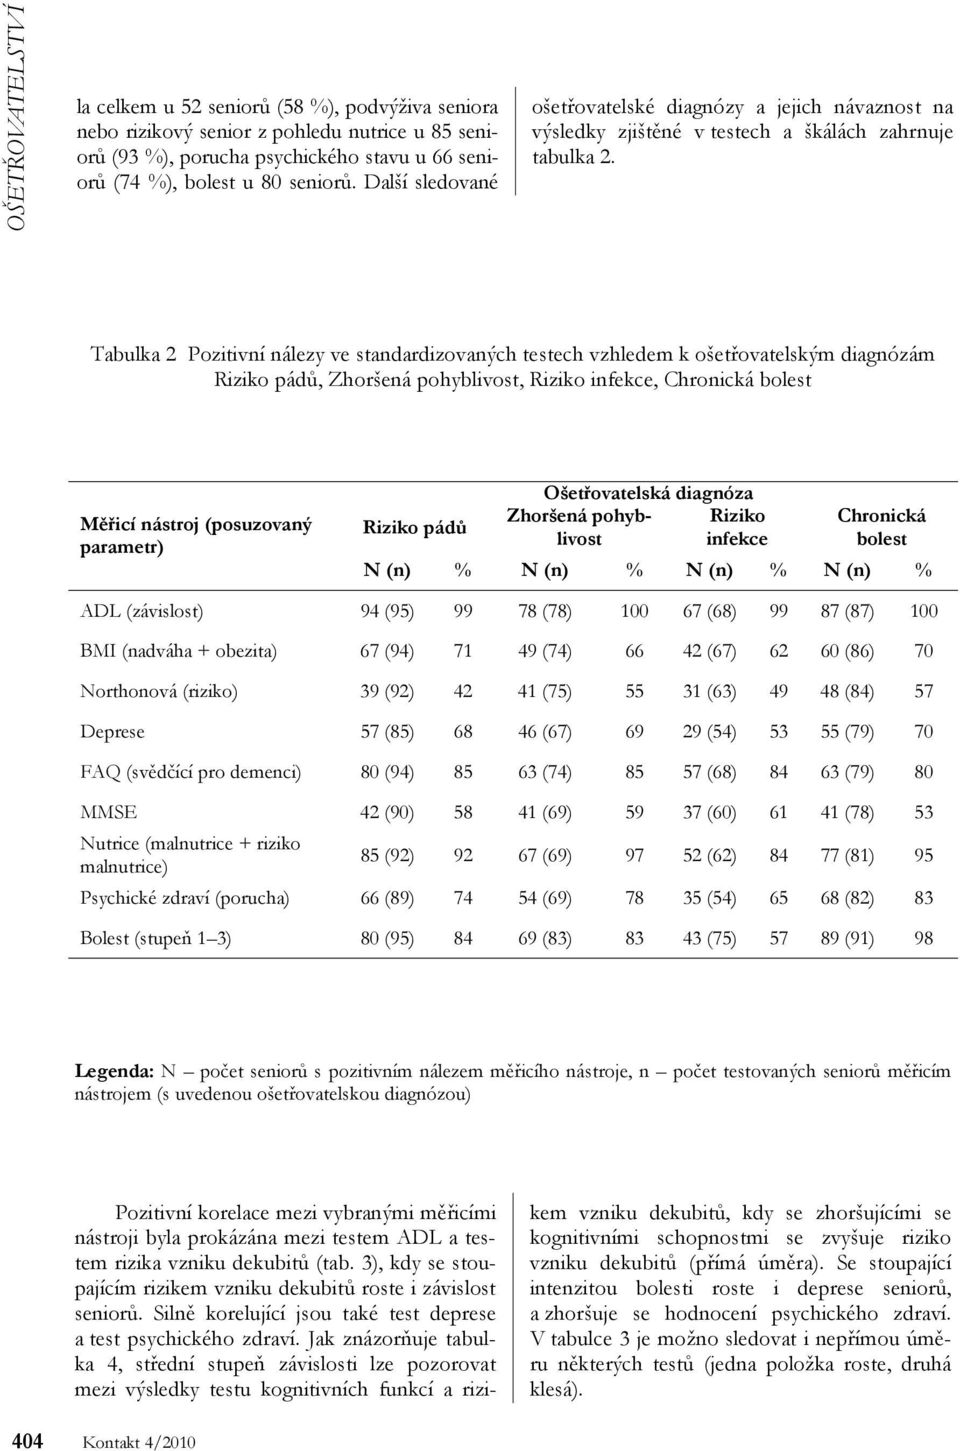 Tabulka 2 Pozitivní nálezy ve standardizovaných testech vzhledem k ošetřovatelským diagnózám Riziko pádů, Zhoršená pohyblivost, Riziko infekce, Chronická bolest Měřicí nástroj (posuzovaný parametr)